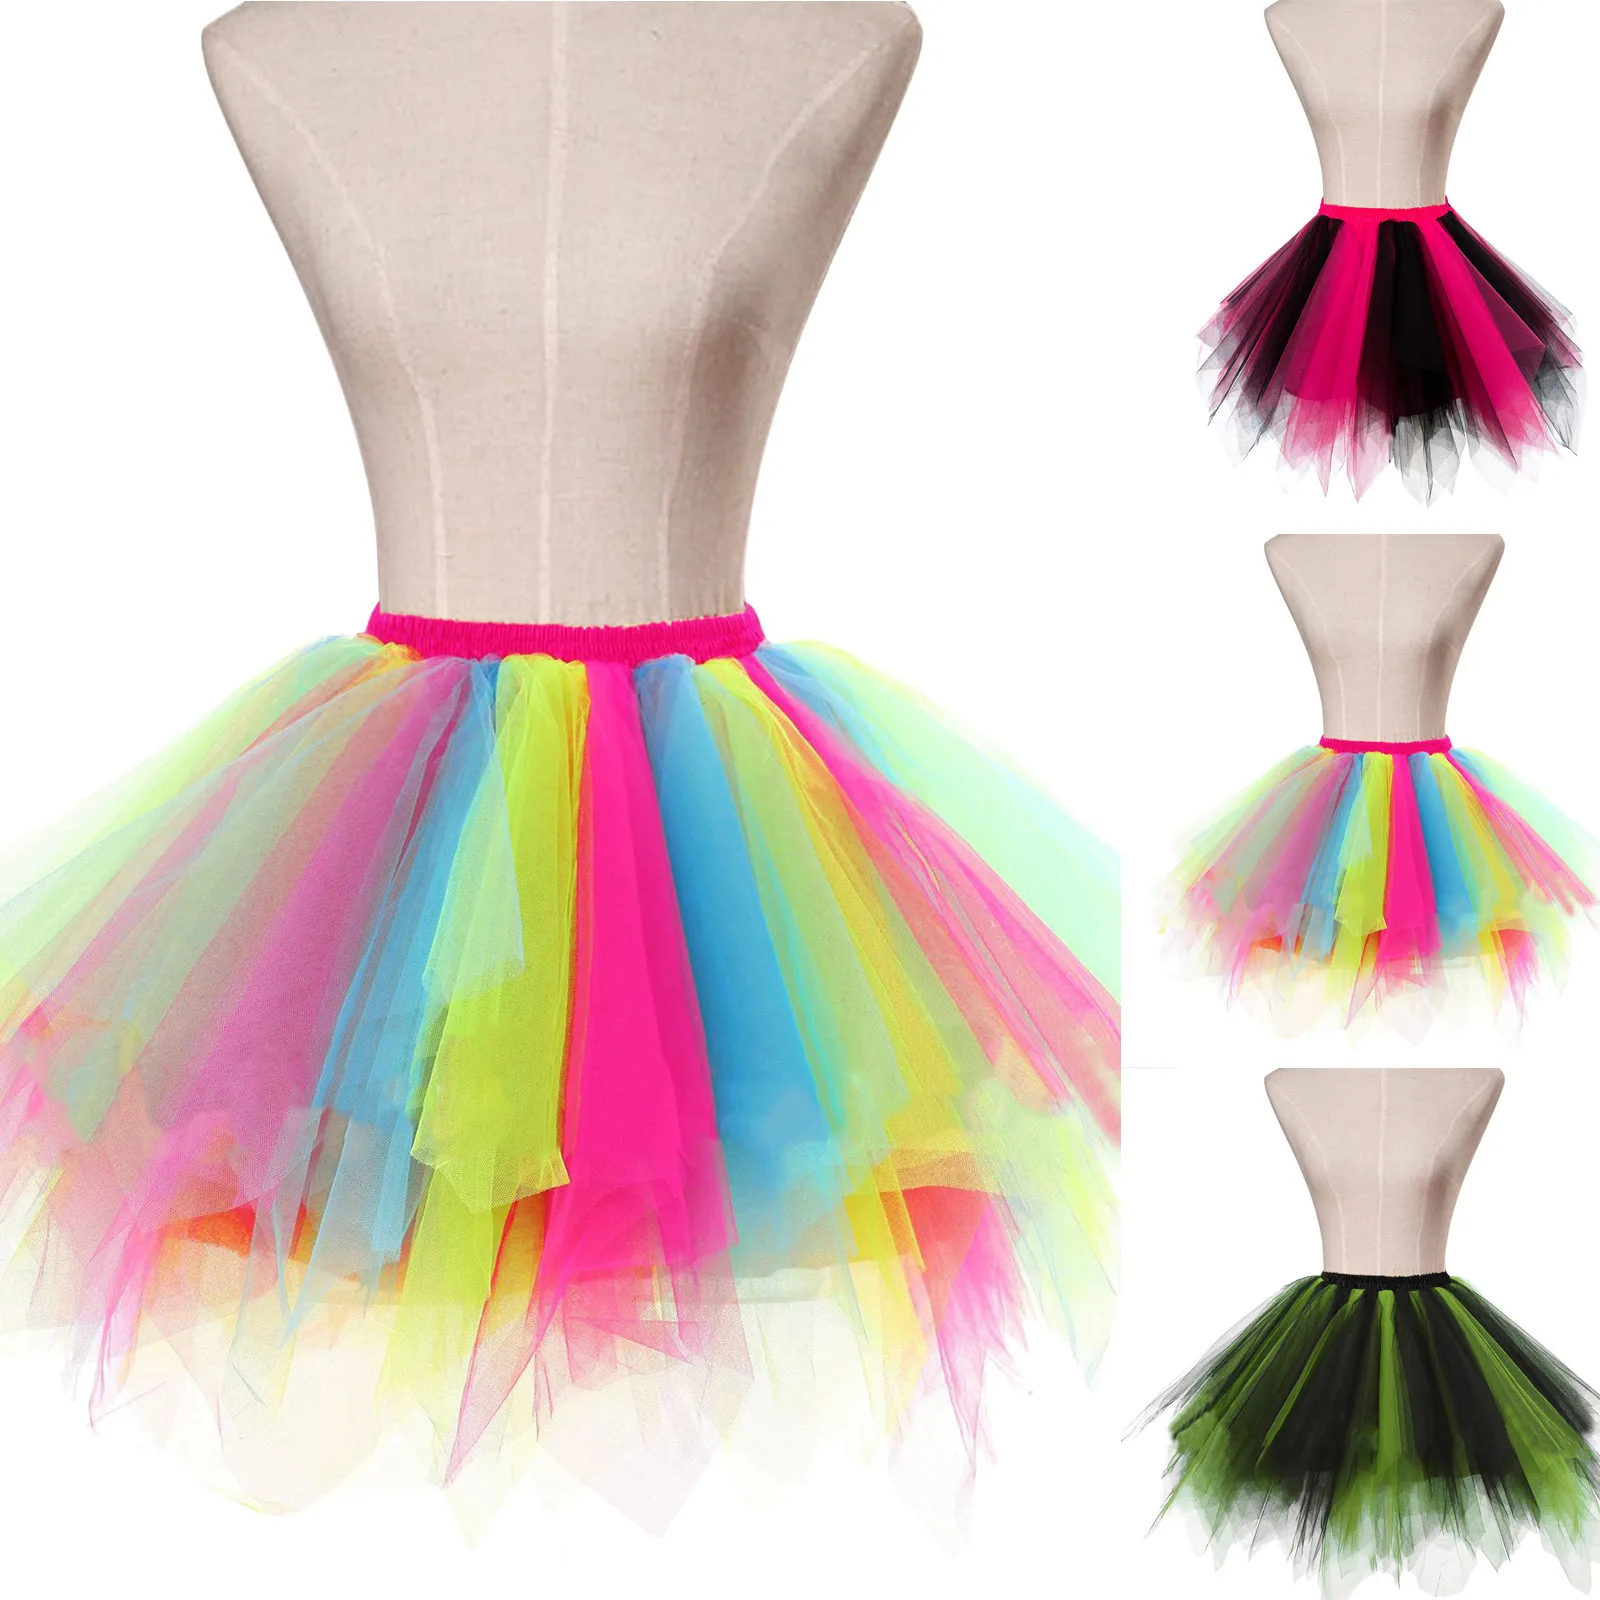 

Women Skirt Tulle Skirt Women Classic Princess Fluffy Ballet Skirts Cute Design Light Up Flashing Tutu Miniskirt For Girls